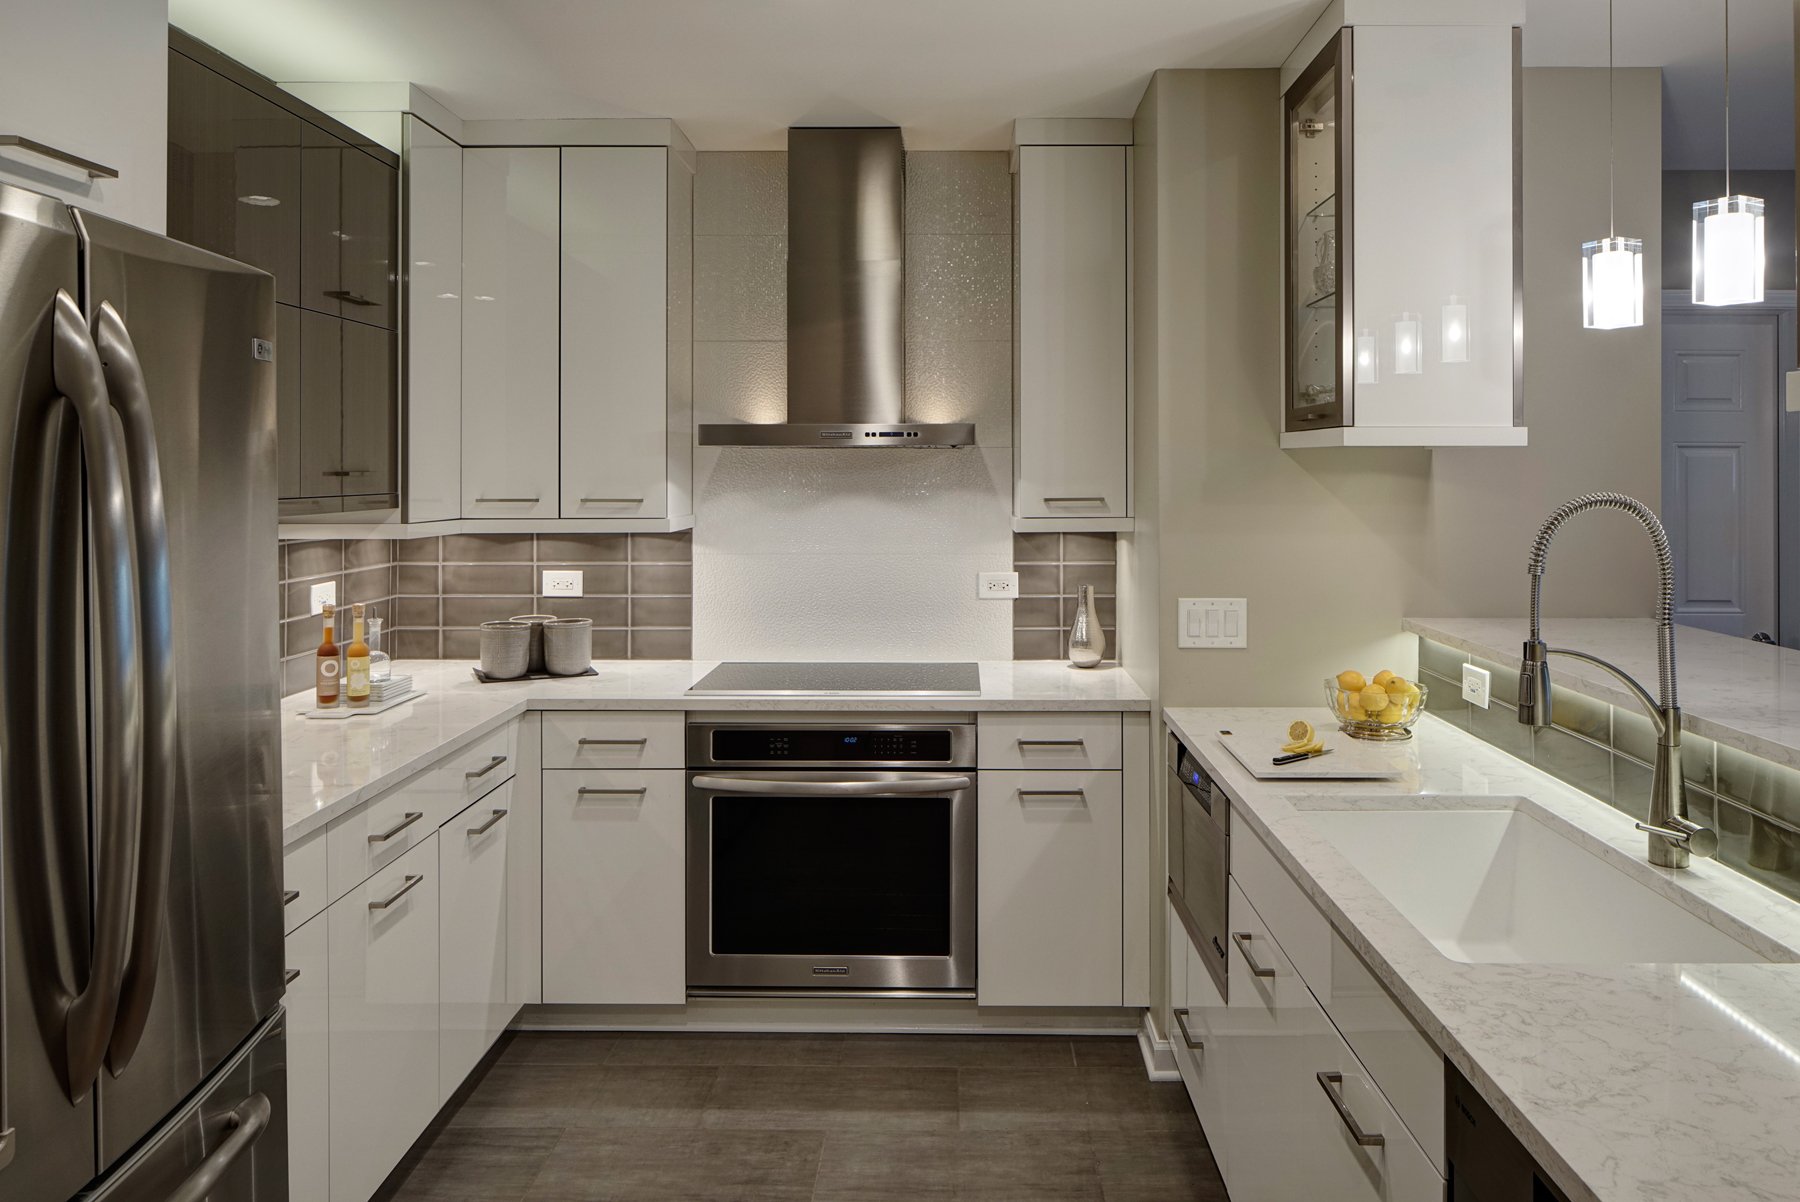 另一个现代设计，这个厨房有光泽的白色橱柜，轻大理石台面，拉丝钢电器，以及不亮的瓷砖后挡板。